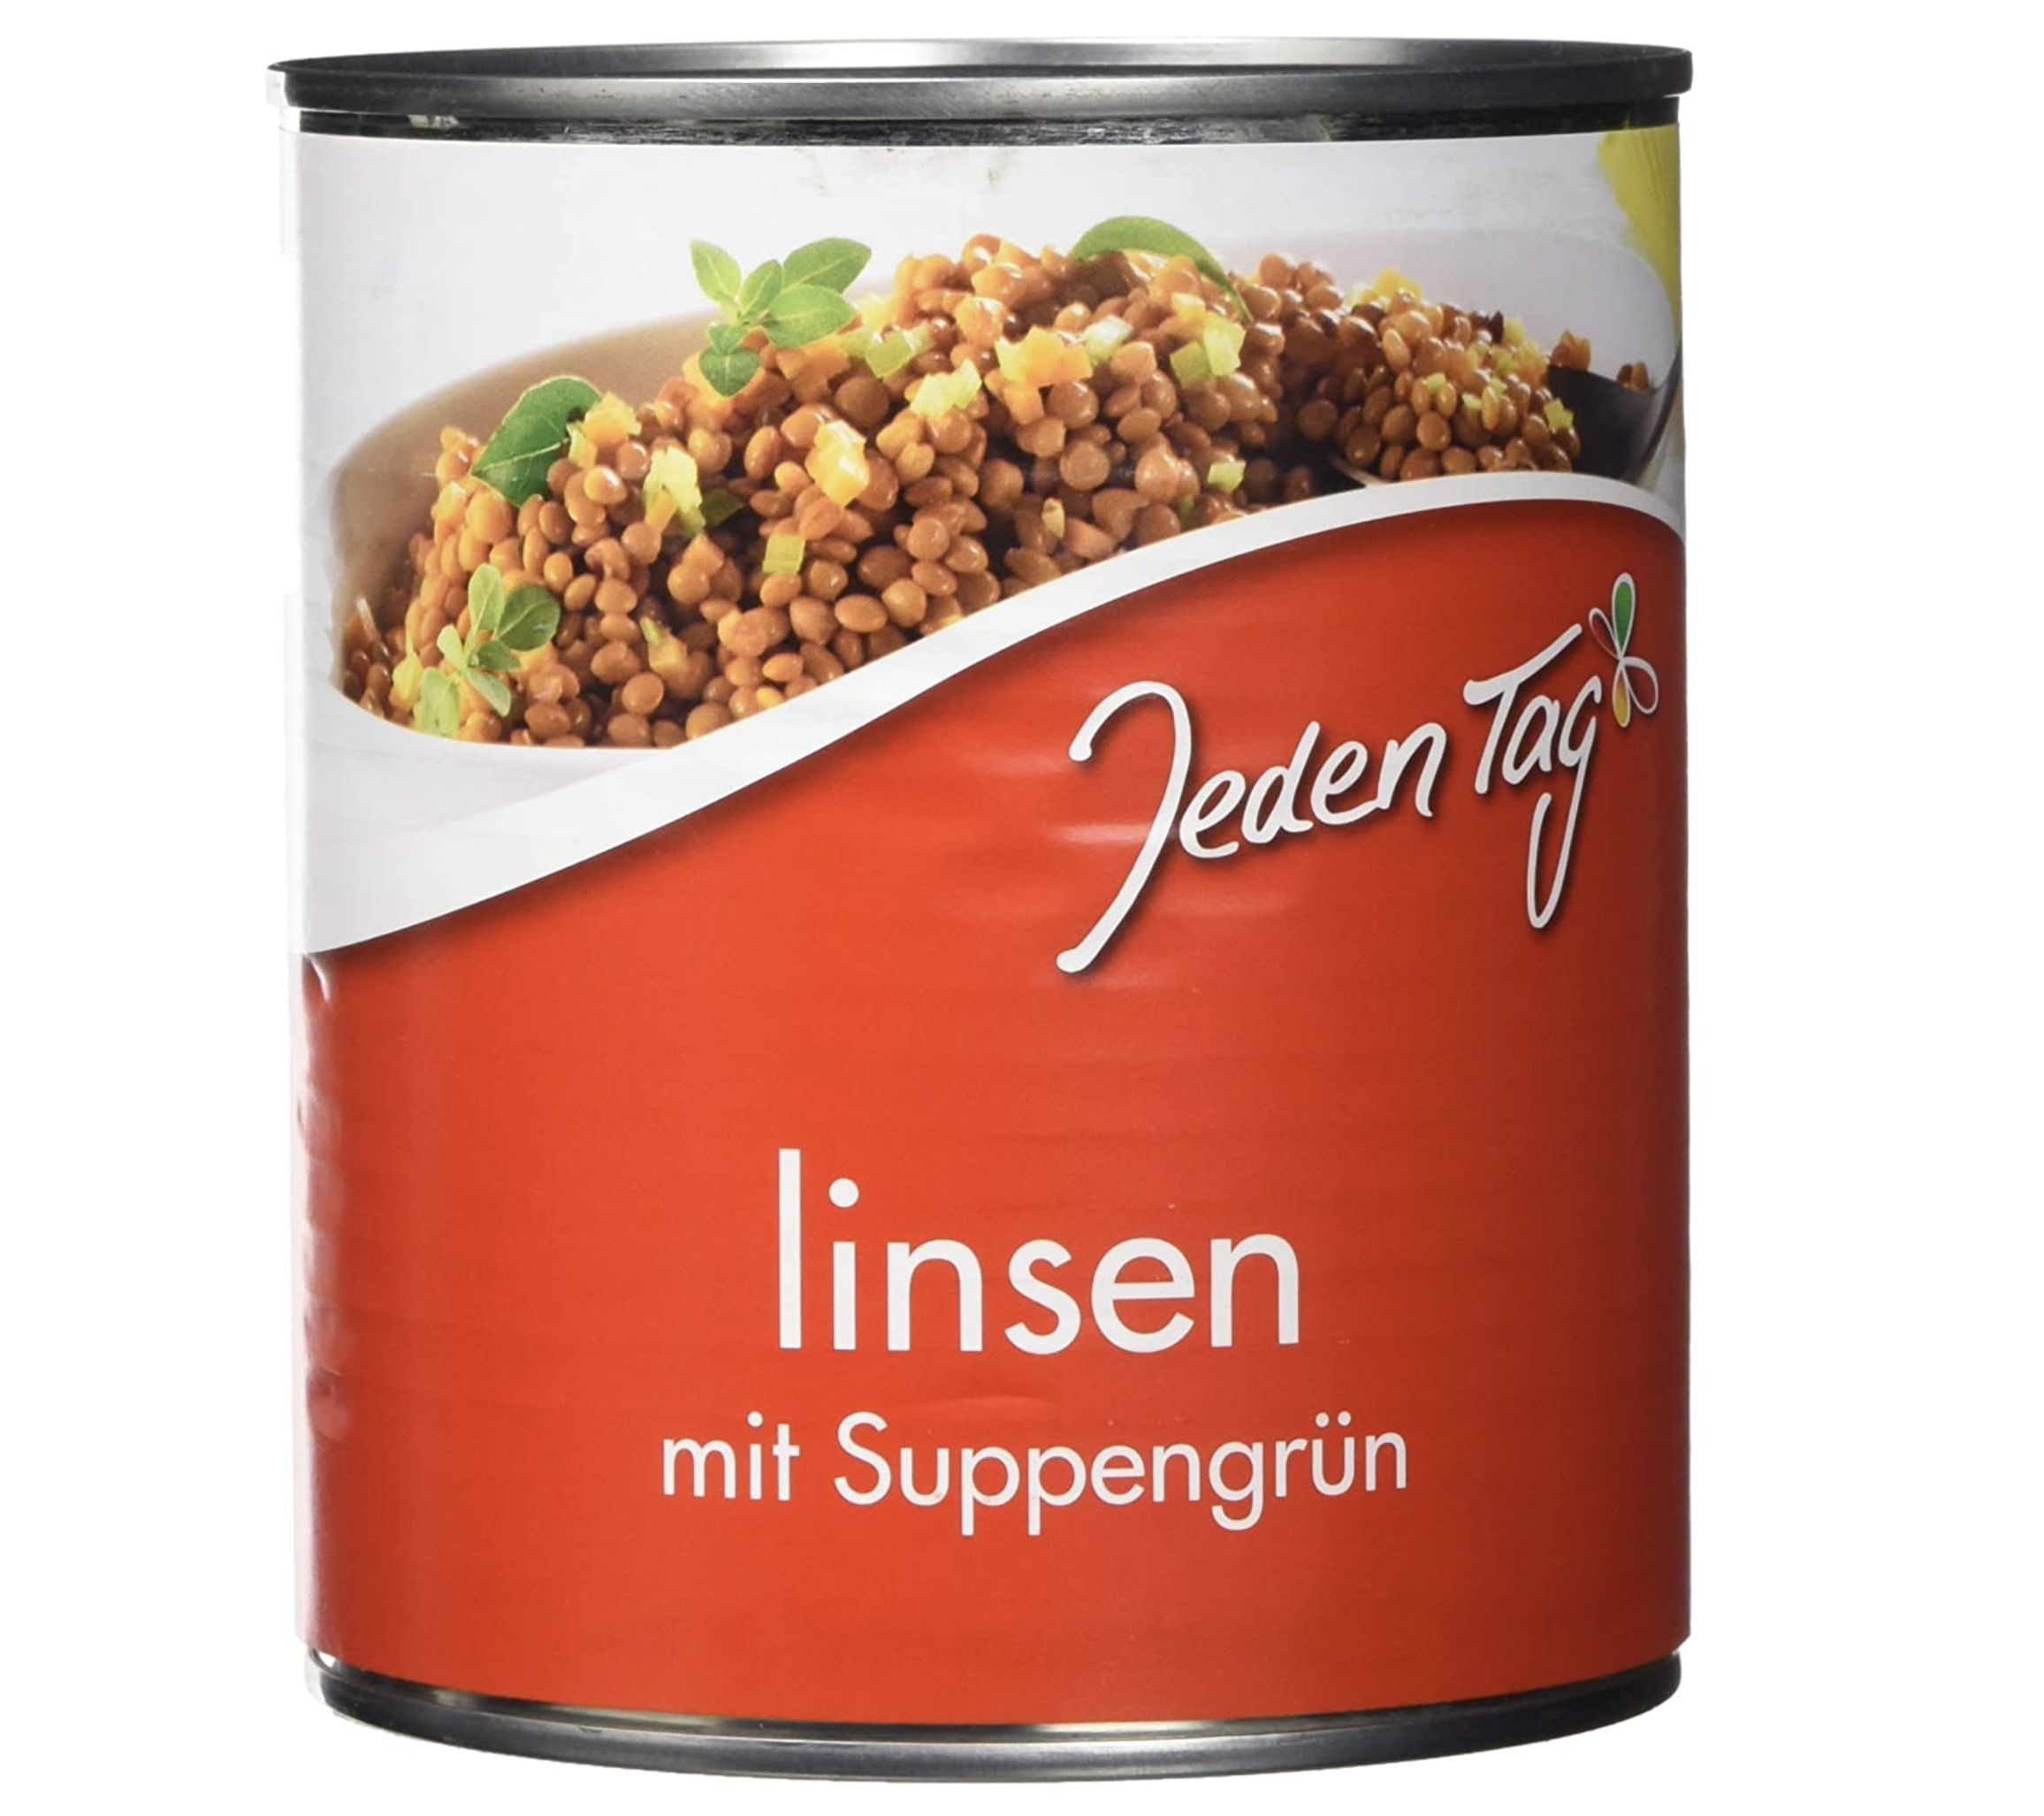 800g Jeden Tag Linsen mit Suppengrün ab 0,82€ &#8211; Prime